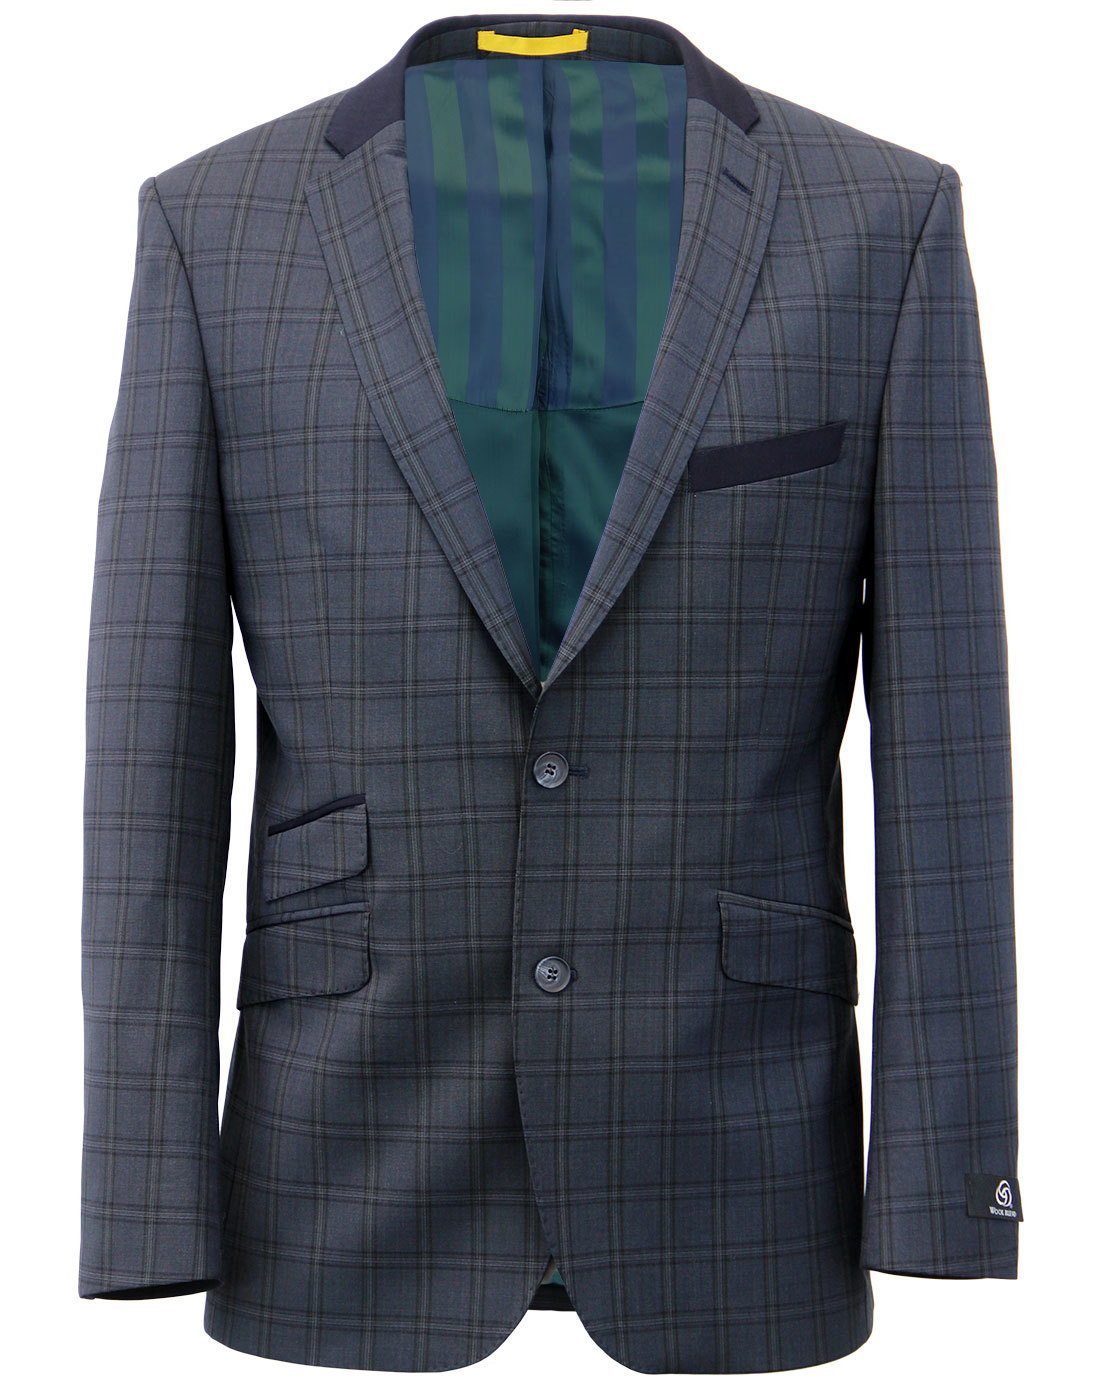 Retro 60s Mod Check 2 or 3 piece Suit